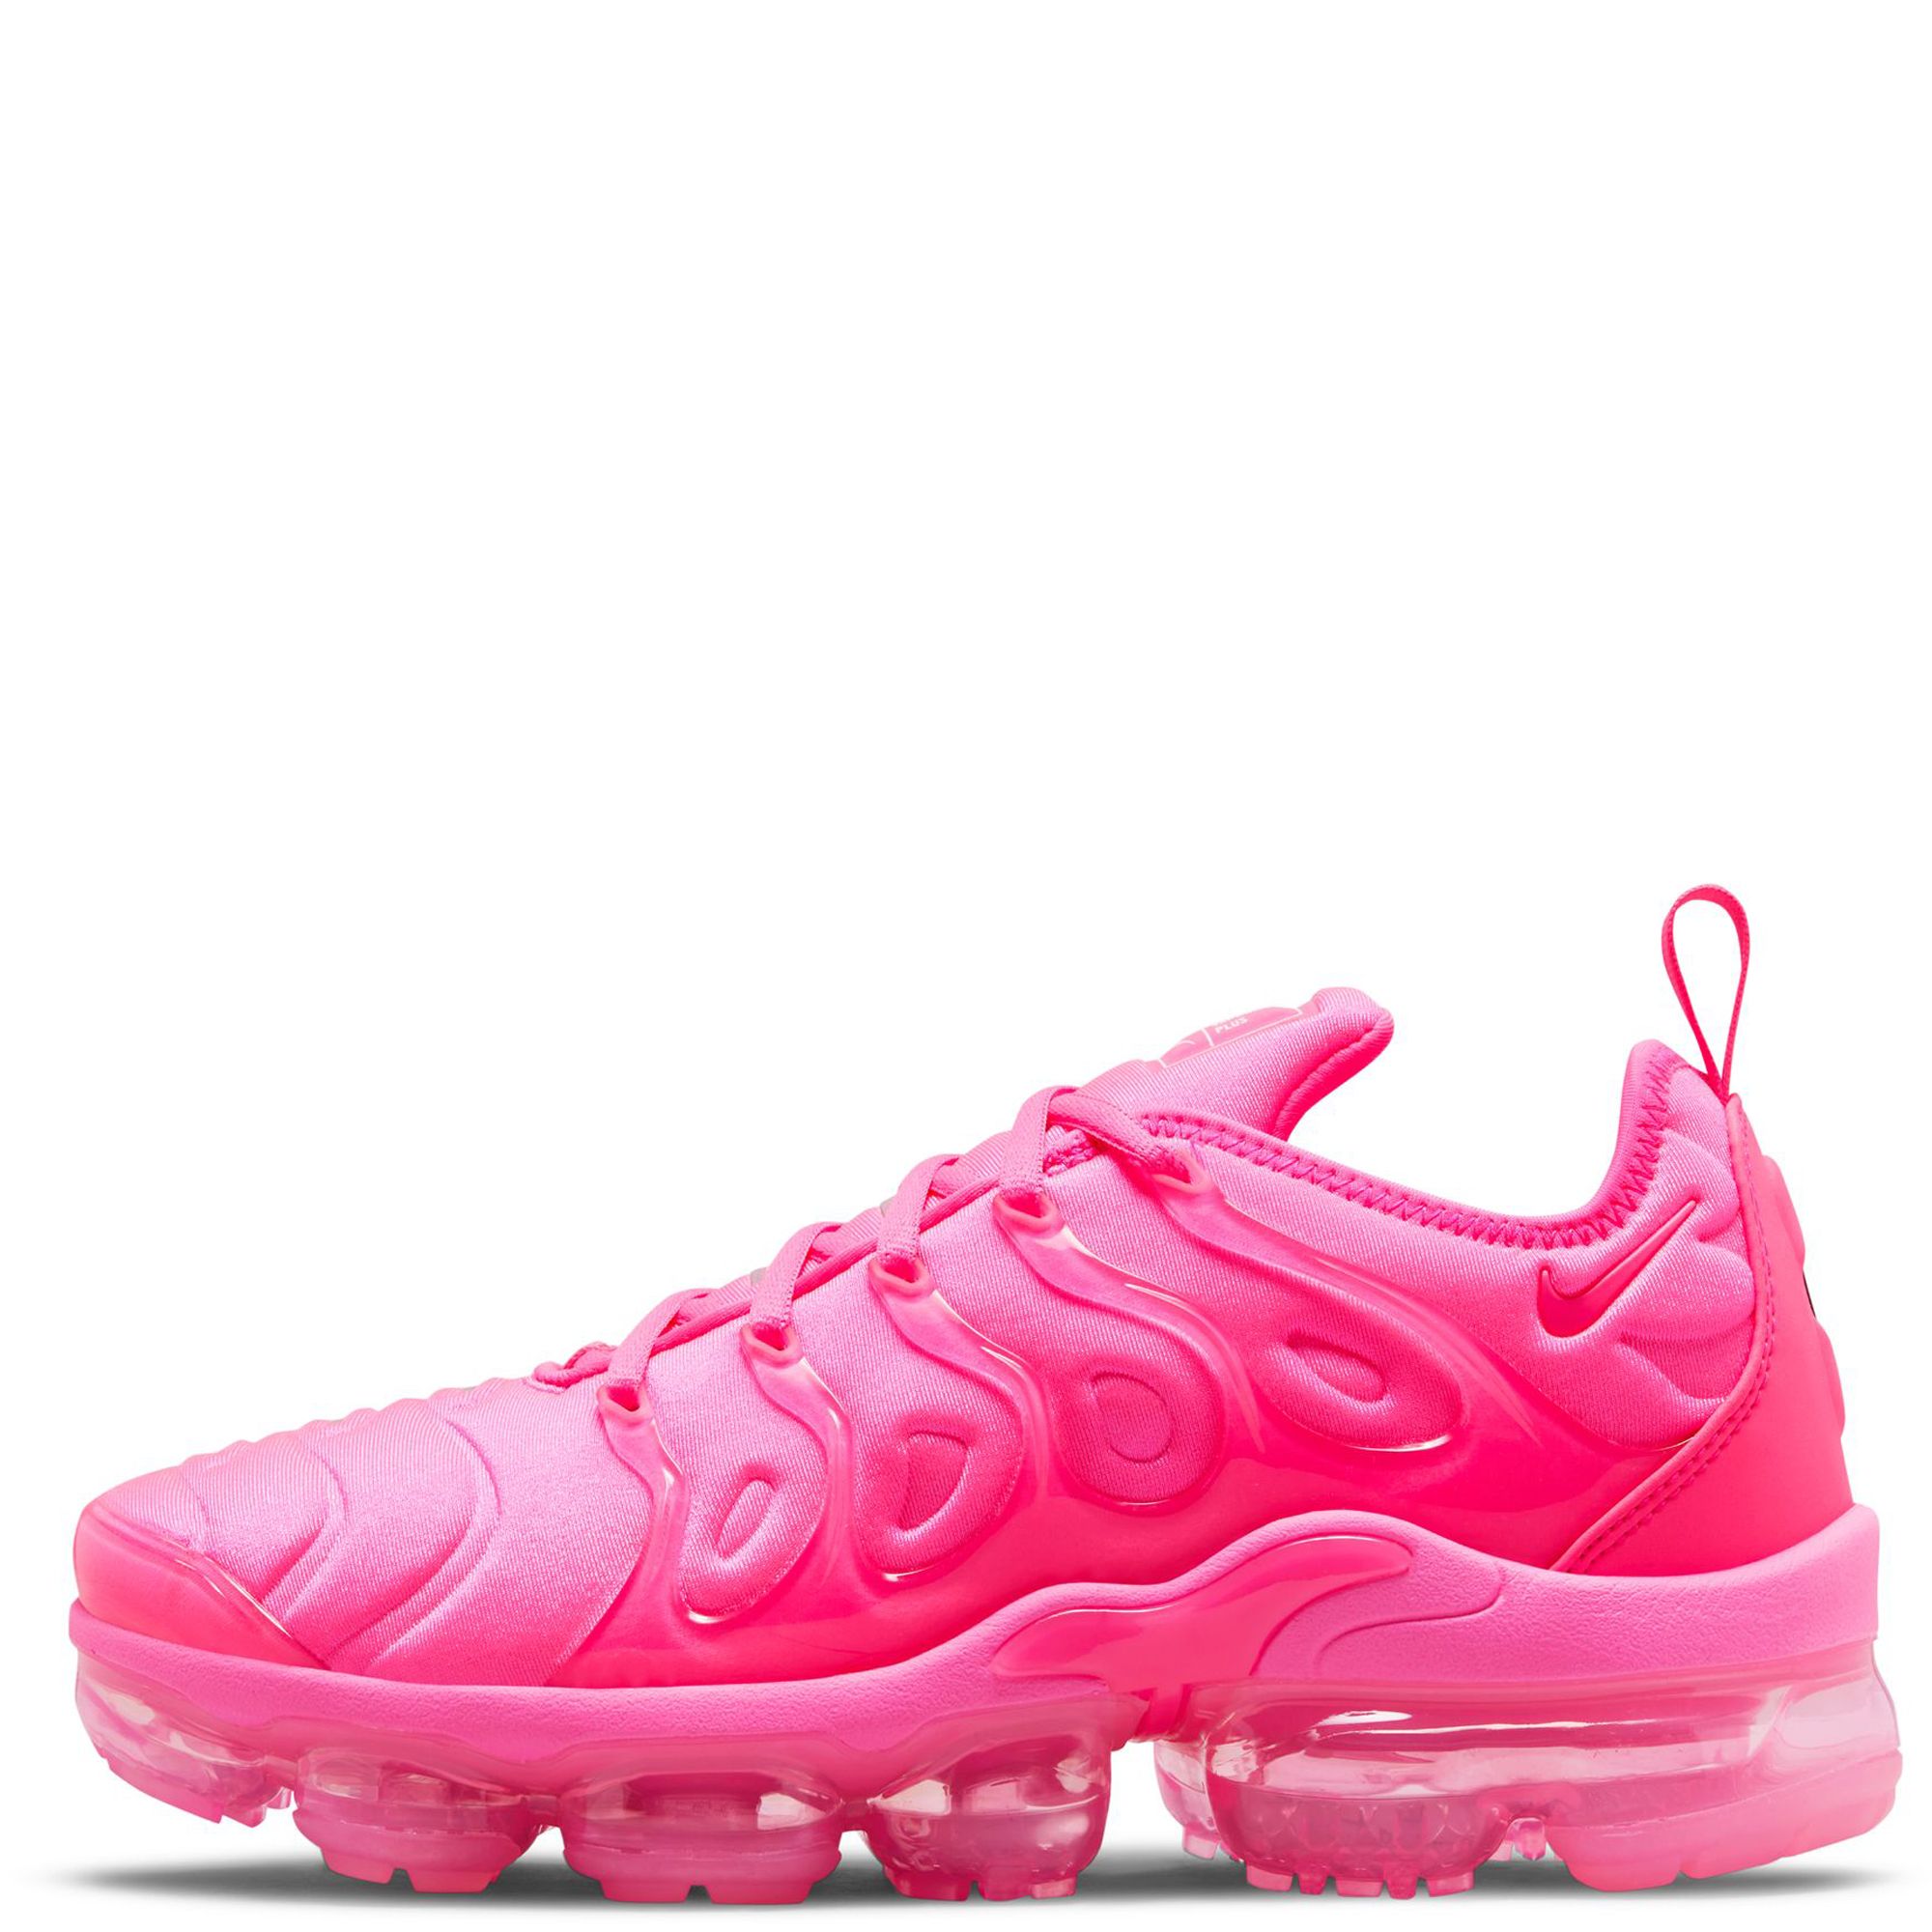 Nike Air Zoom Type Hyper Pink Releasing This Week •